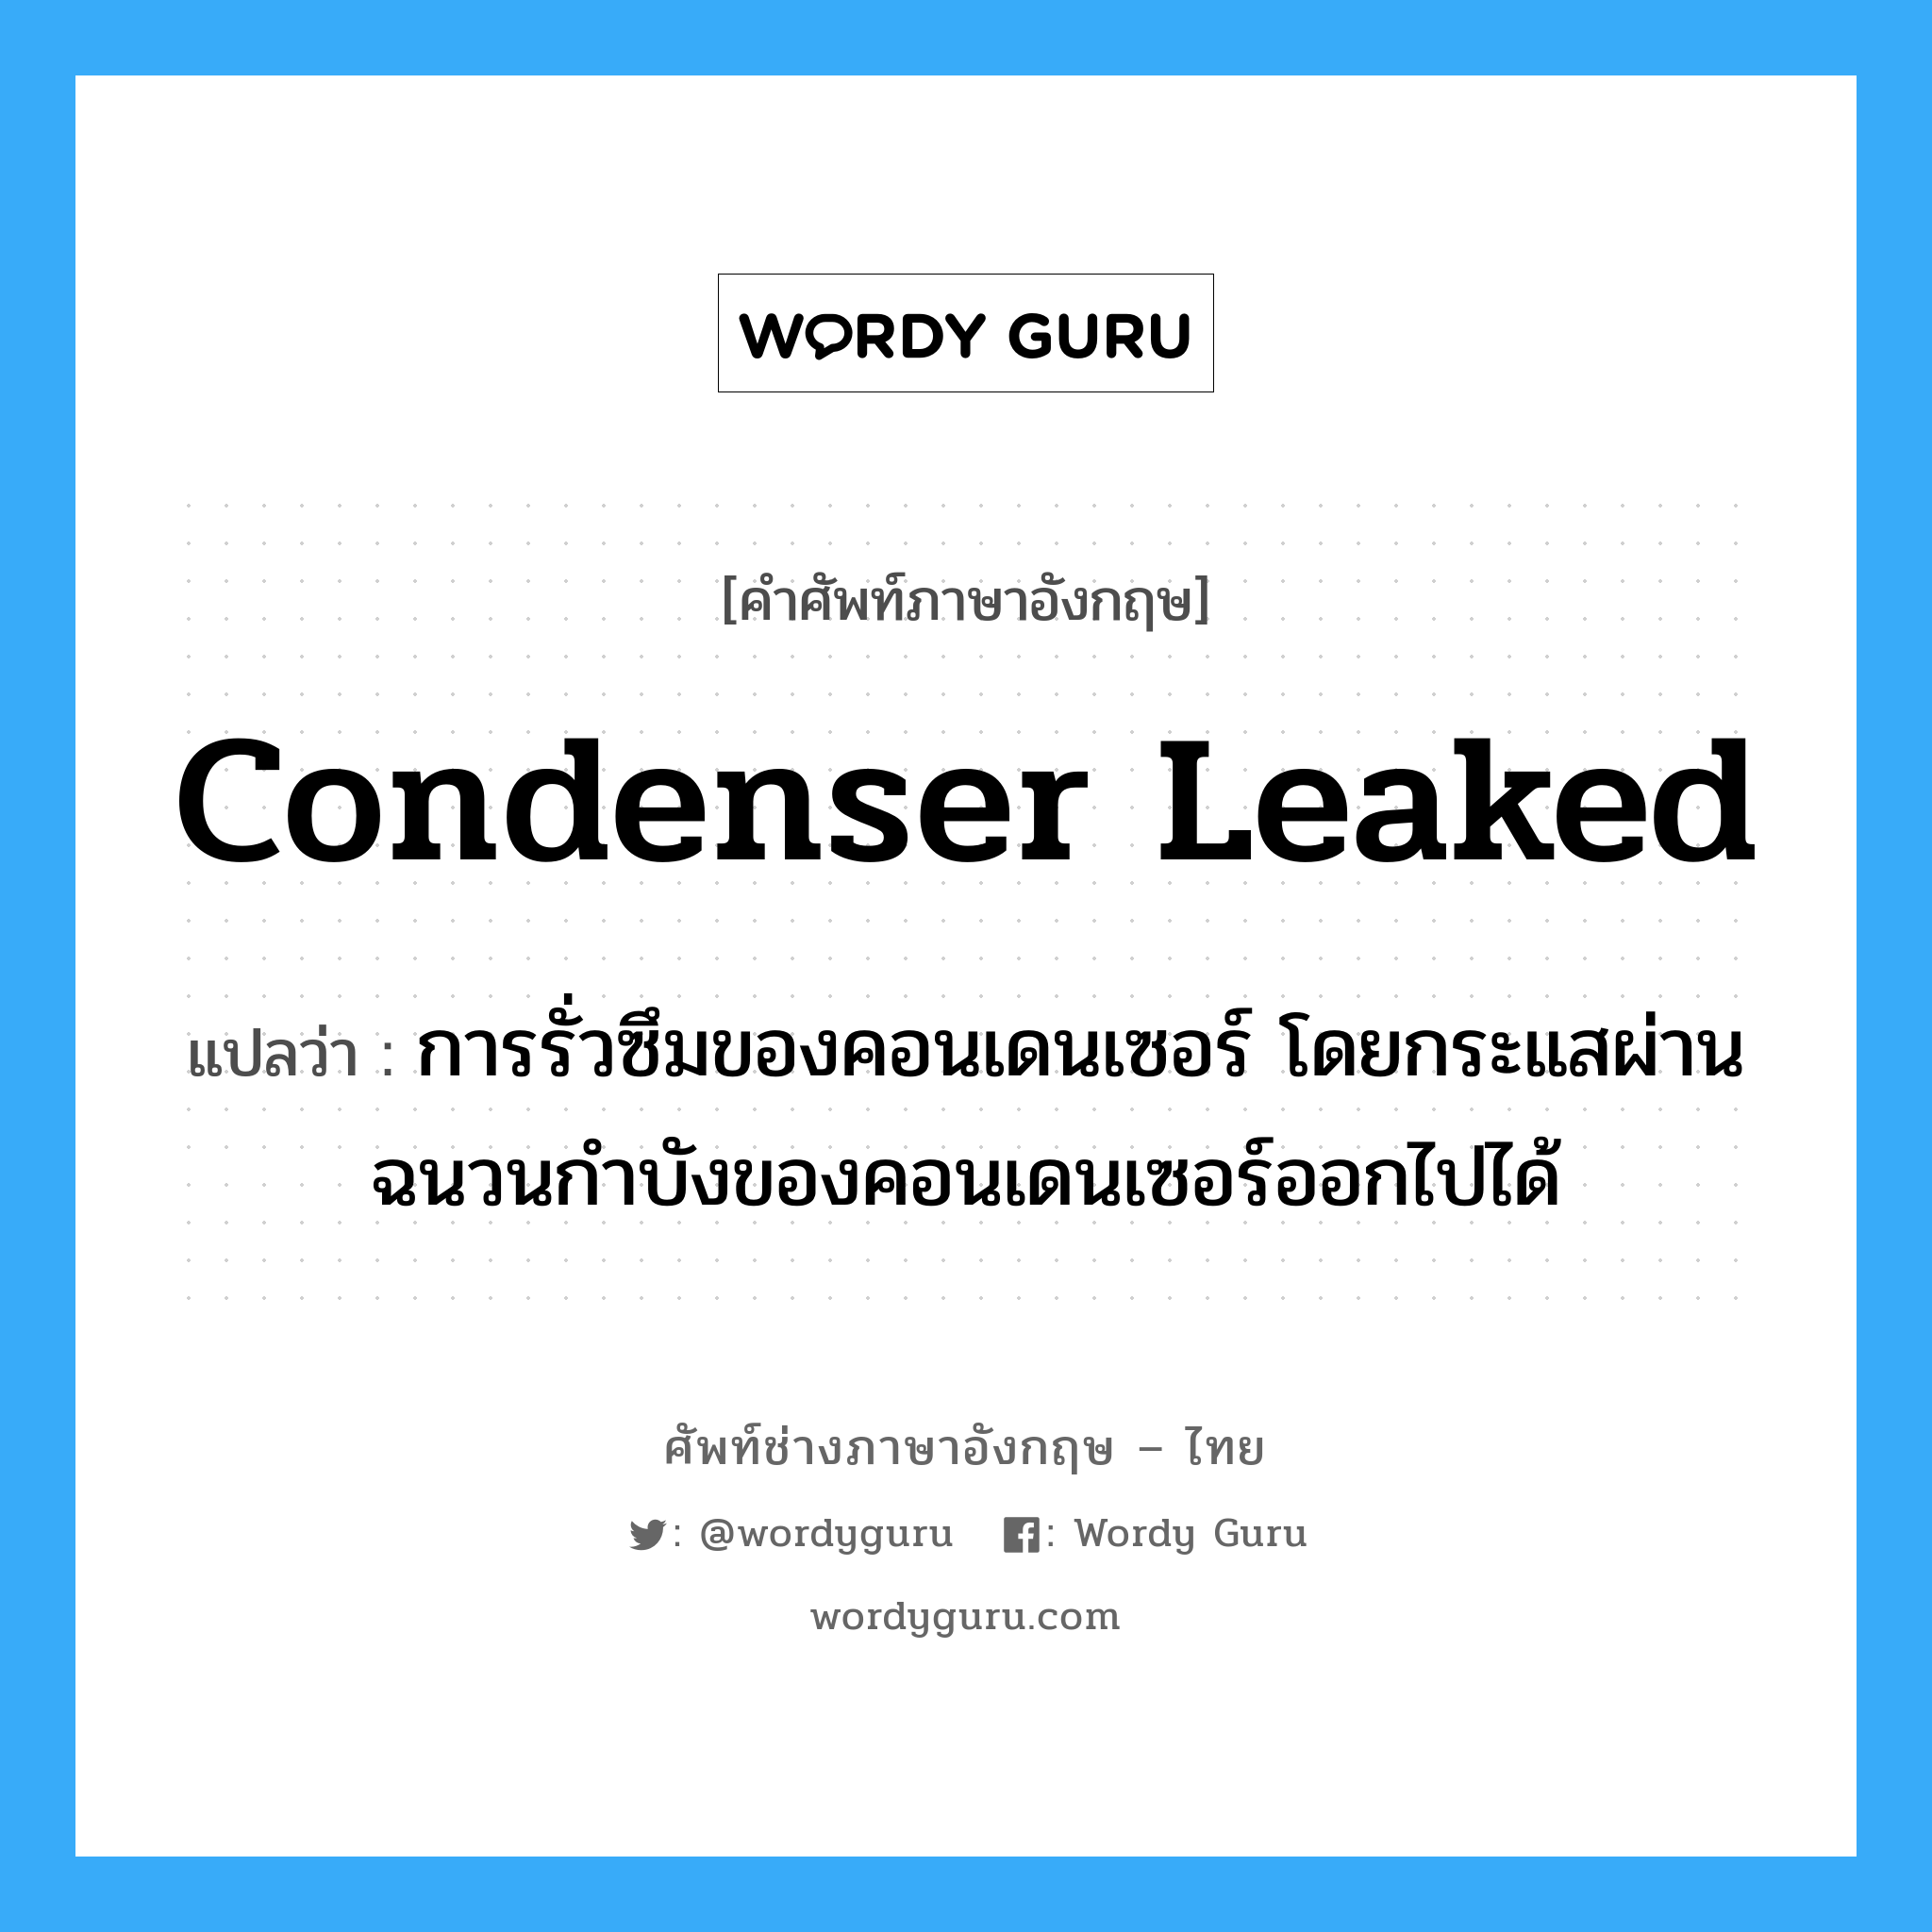 condenser leaked แปลว่า?, คำศัพท์ช่างภาษาอังกฤษ - ไทย condenser leaked คำศัพท์ภาษาอังกฤษ condenser leaked แปลว่า การรั่วซึมของคอนเดนเซอร์ โดยกระแสผ่านฉนวนกำบังของคอนเดนเซอร์ออกไปได้